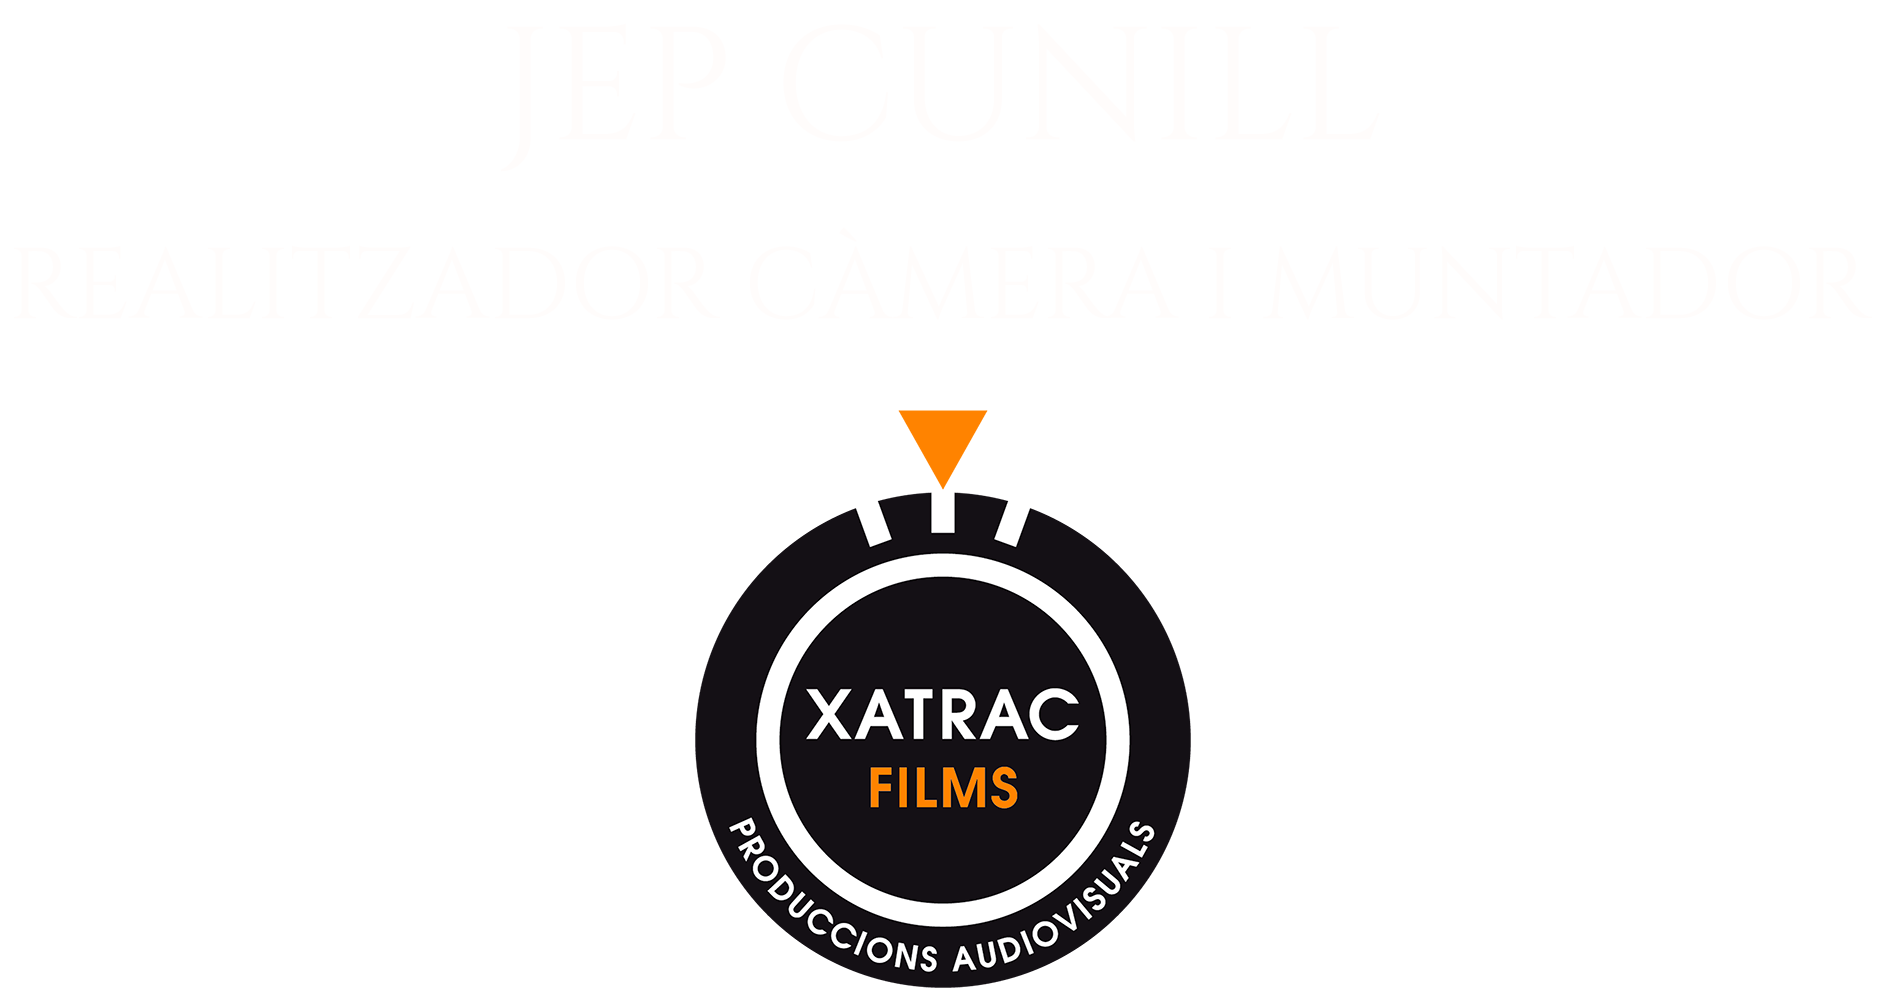 Jep Cunill - Producciones audiovisuales